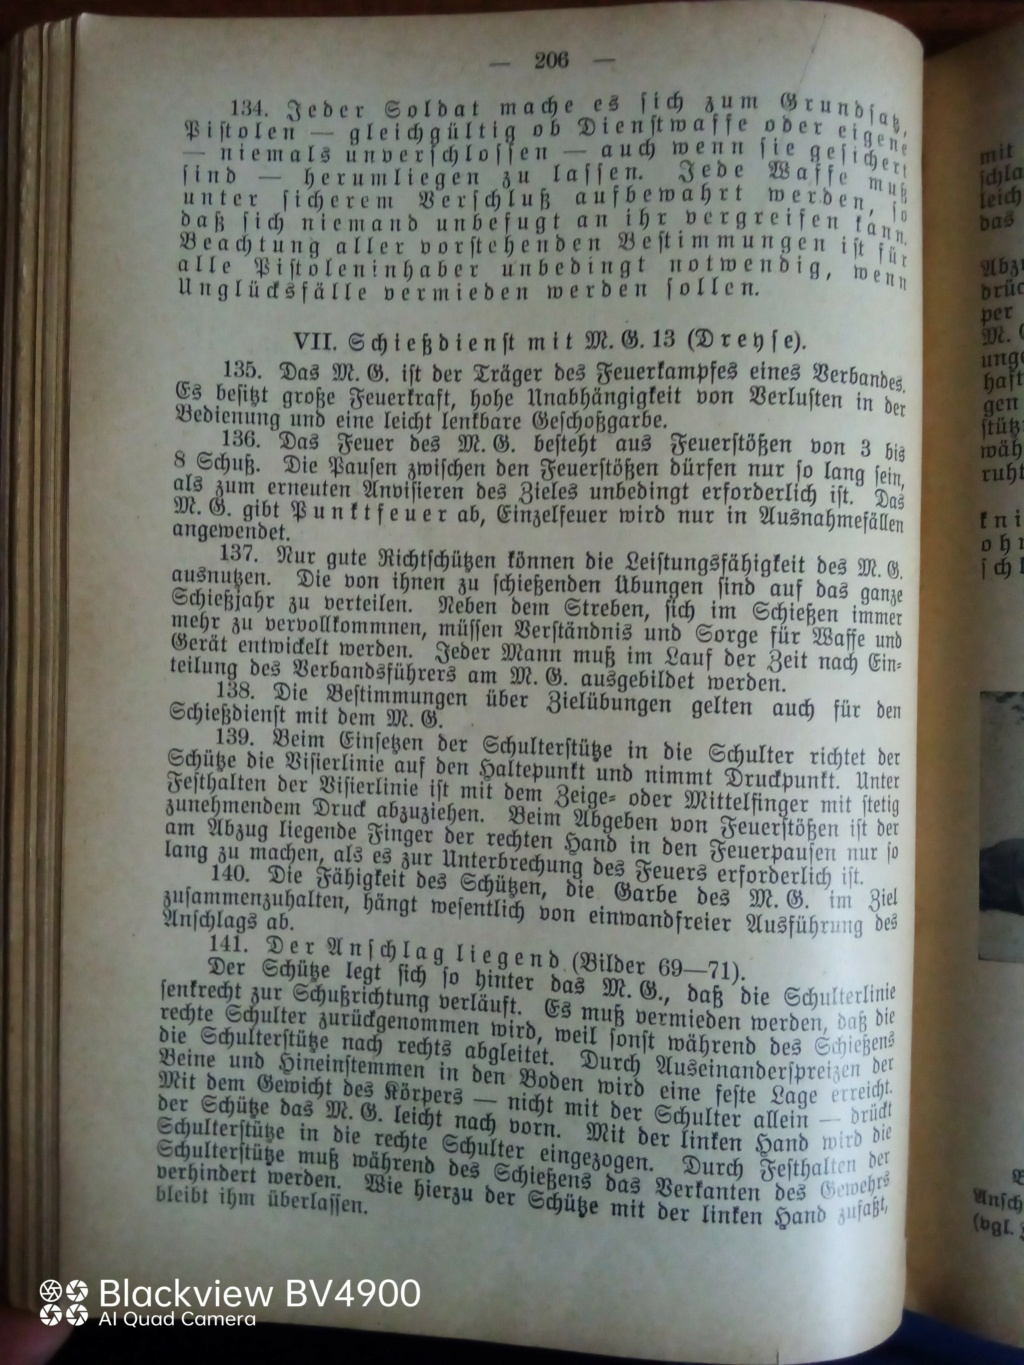 Handbucher der Luftwaffe - Page 4 Img_2282